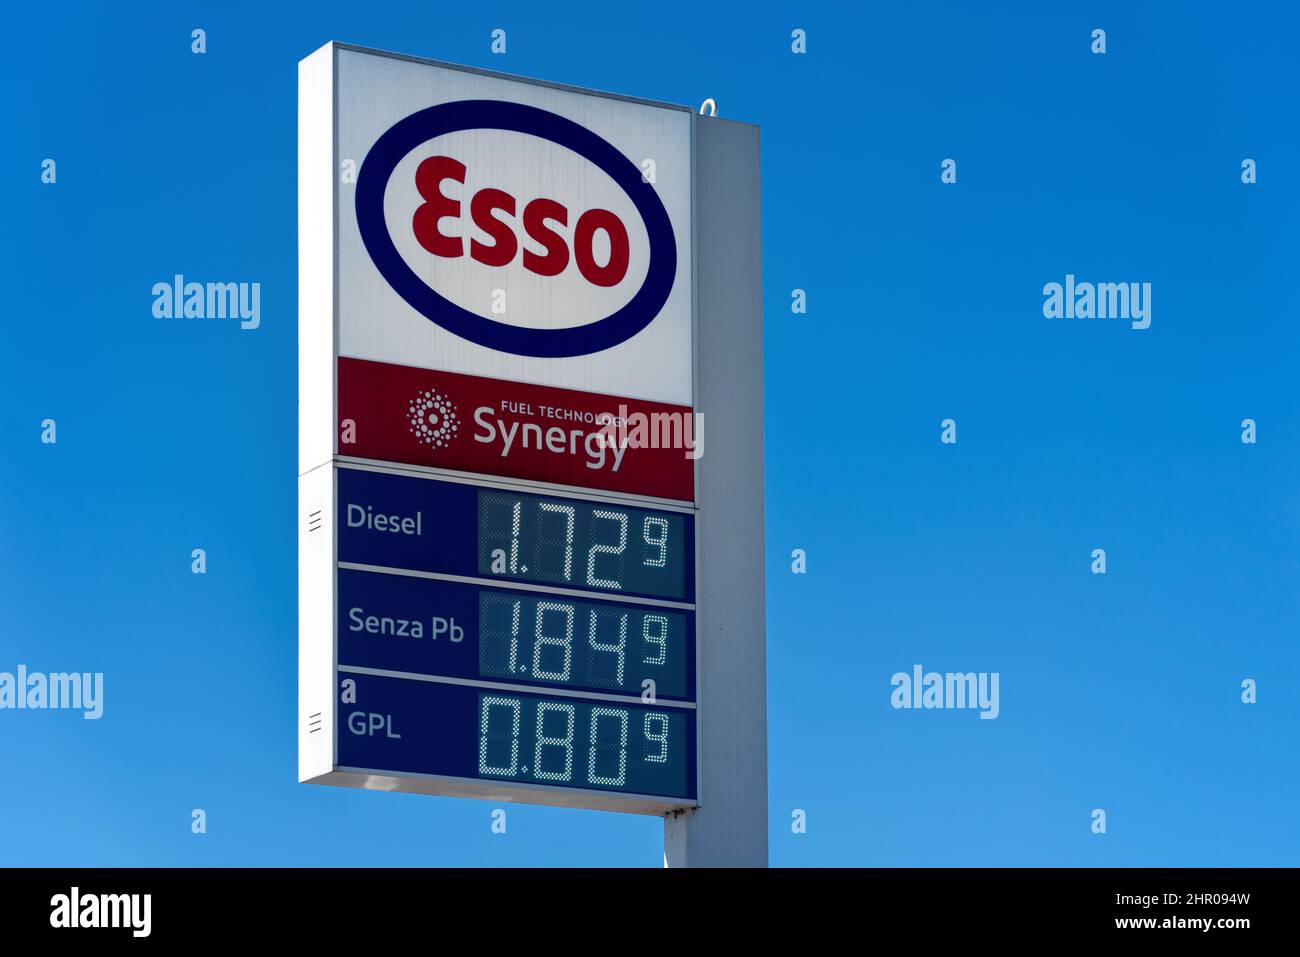 Fossano, Italien - 22. Februar 2022: Esso-Logo mit Kraftstoffpreisanzeige am blauen Himmel, Esso ist eine Marke des globalen Ölindustriegiganten ExxonMob Stockfoto